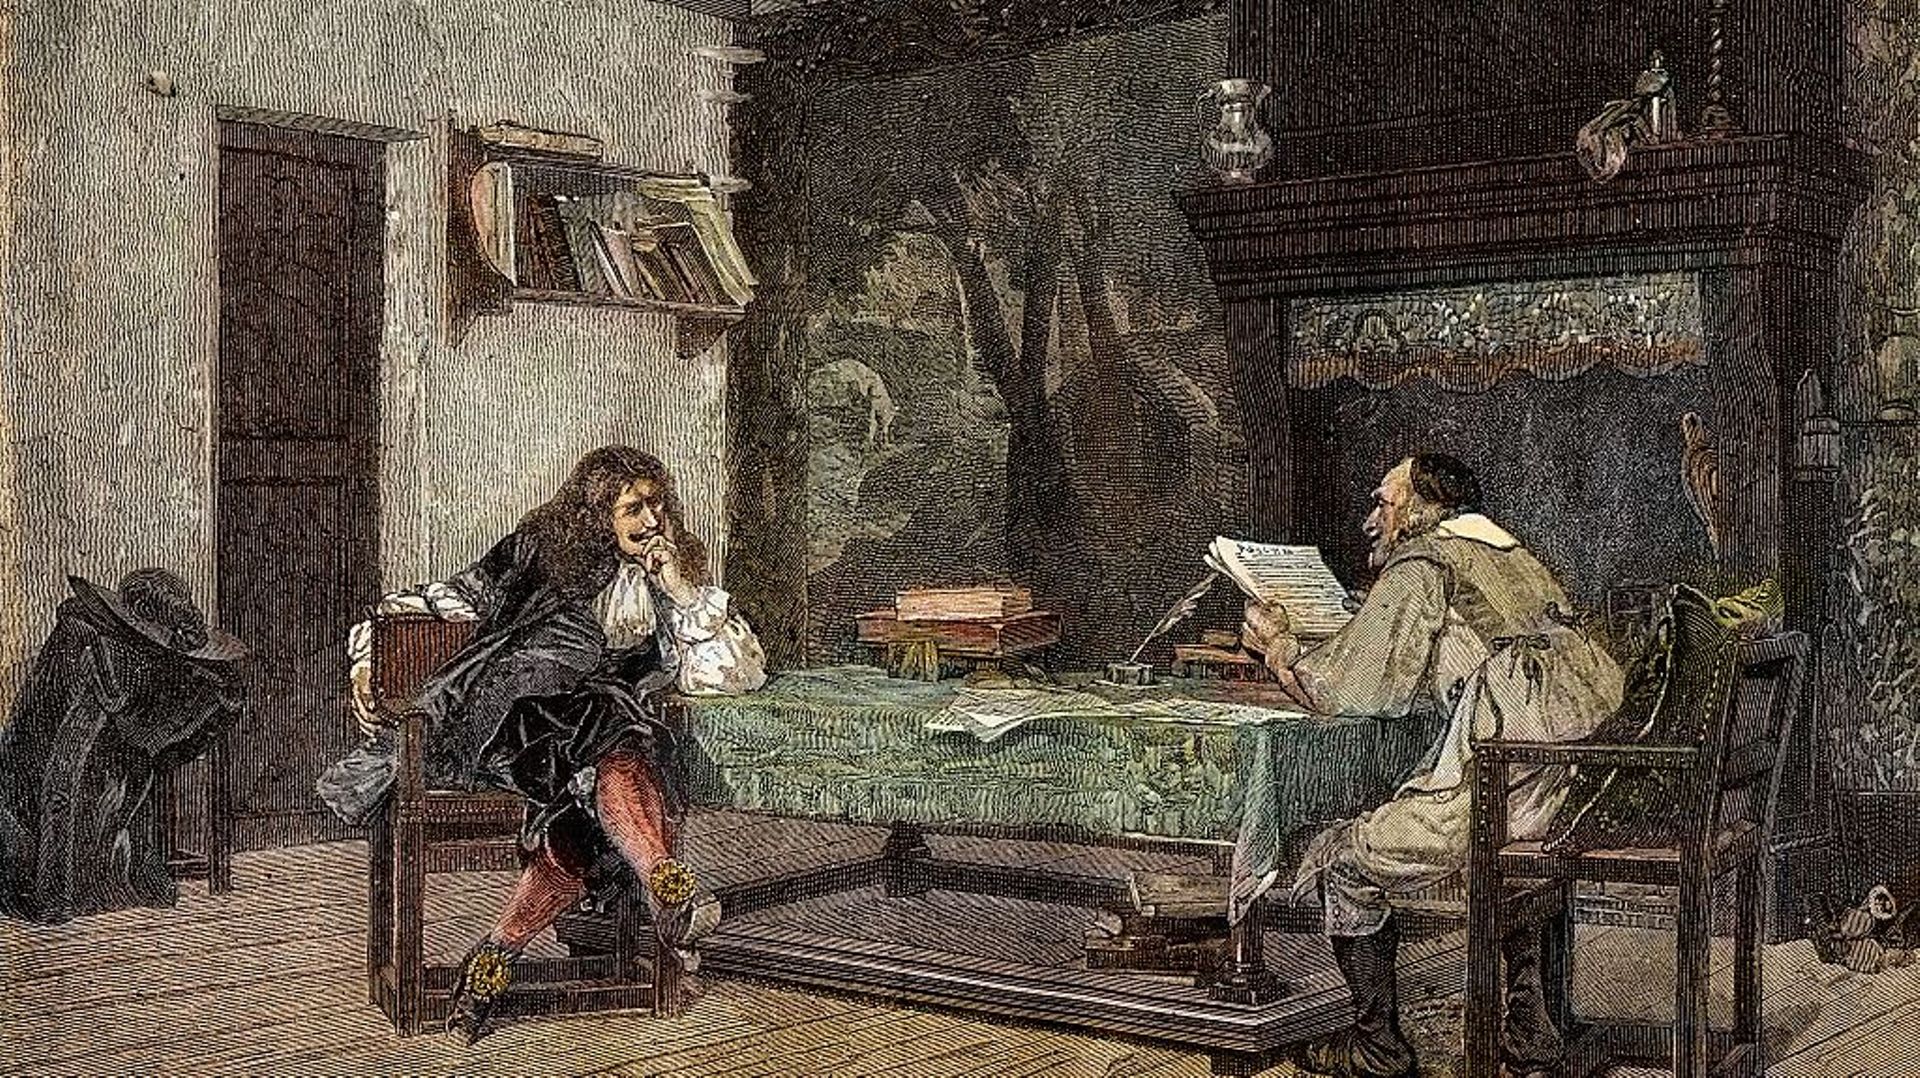 Collaboration entre Jean-Baptiste Molière et Pierre Corneille, gravure de Jean-Leon Gerome, 1875.